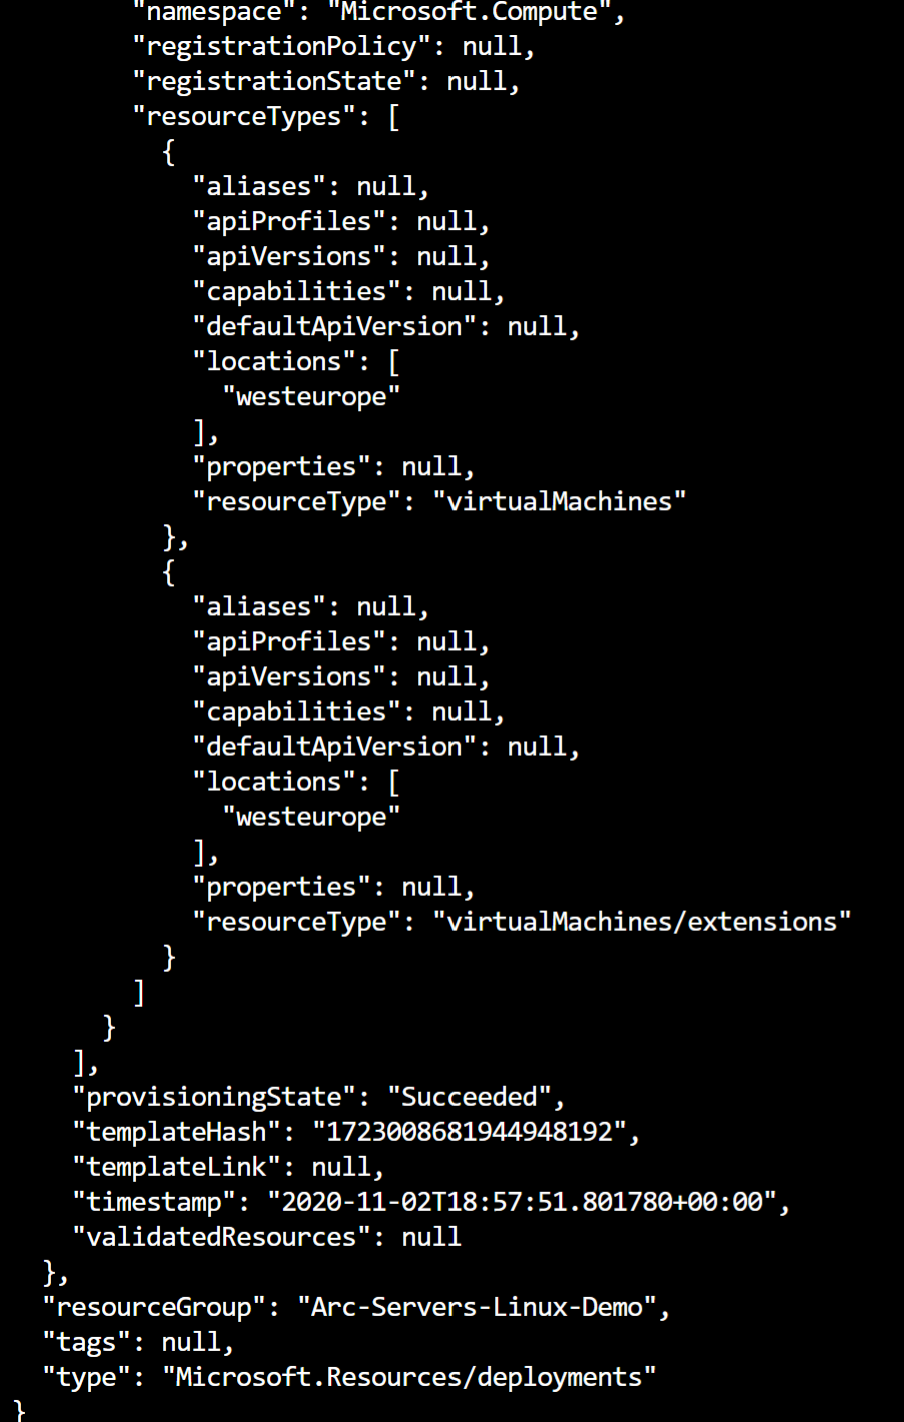 A screenshot of an output from an ARM template.